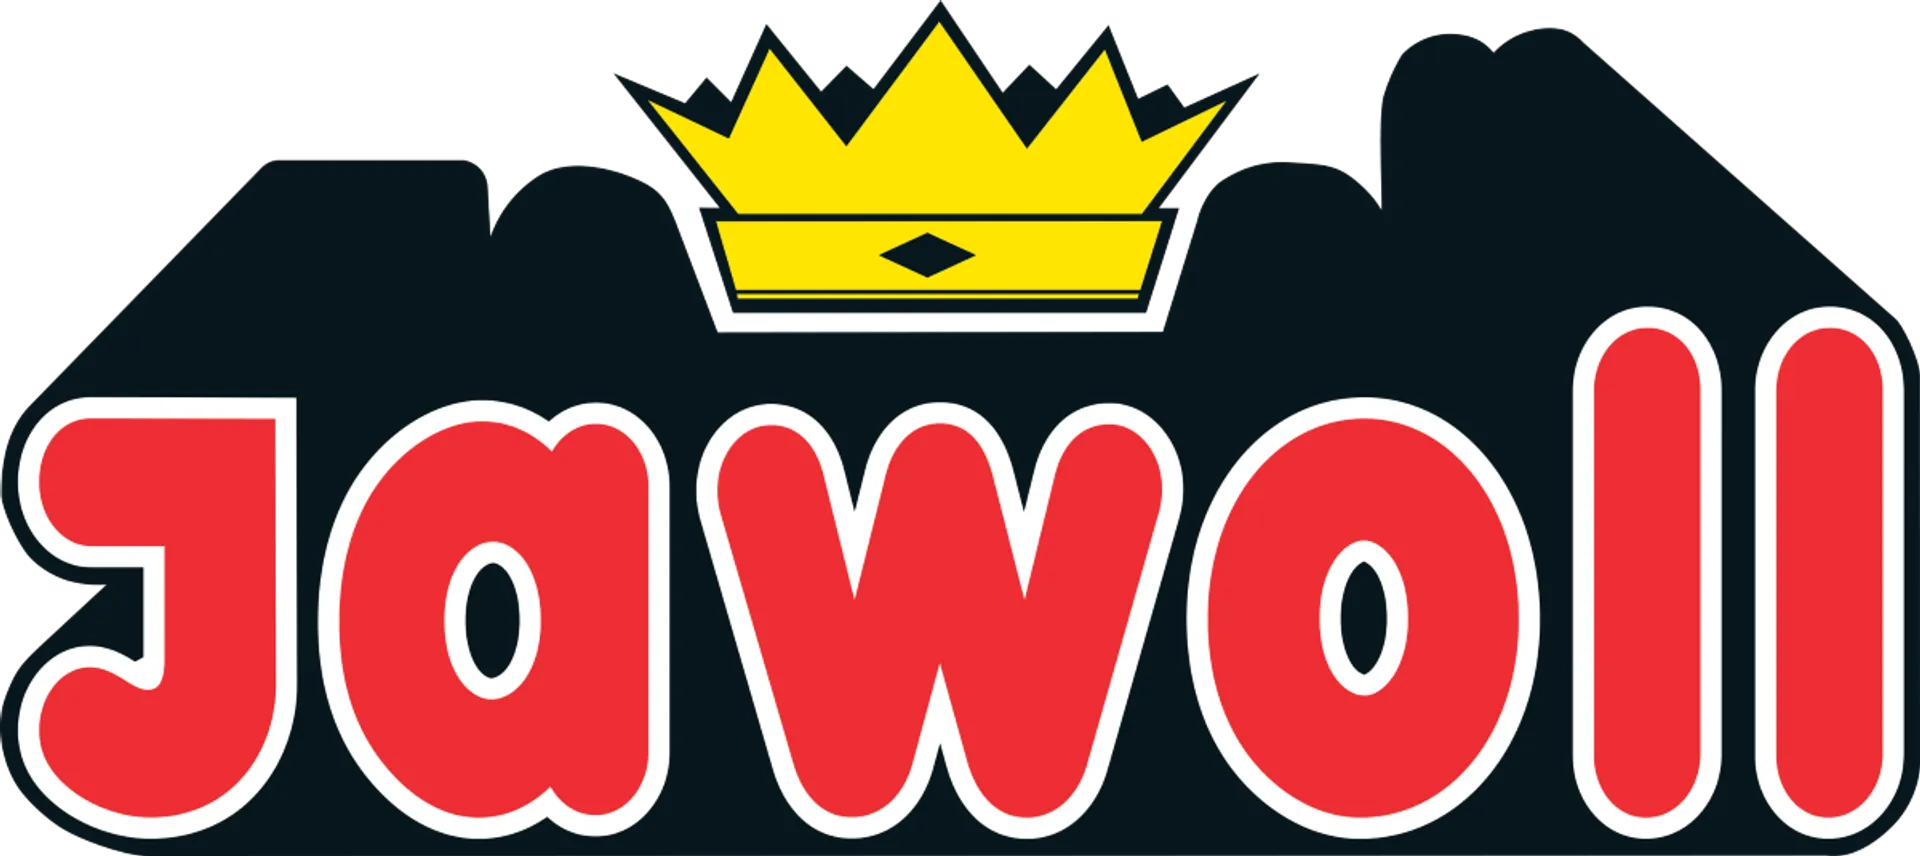 JAWOLL logo